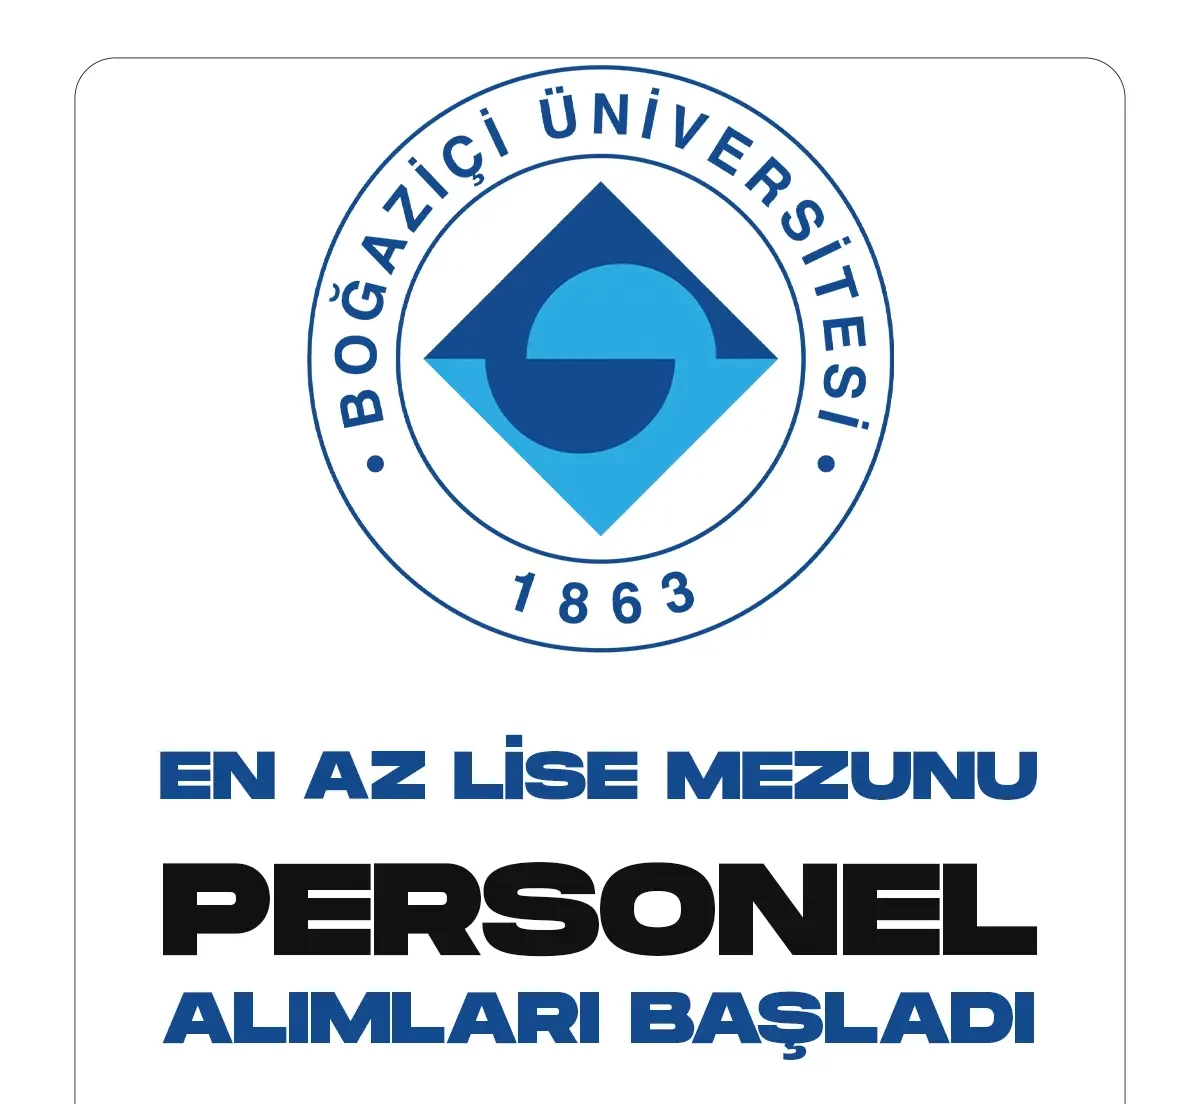 Boğaziçi Üniversitesi farklı unvanlarda yeni personel alımları yapacak. İlgili alımlara başvurular bugün başladı.